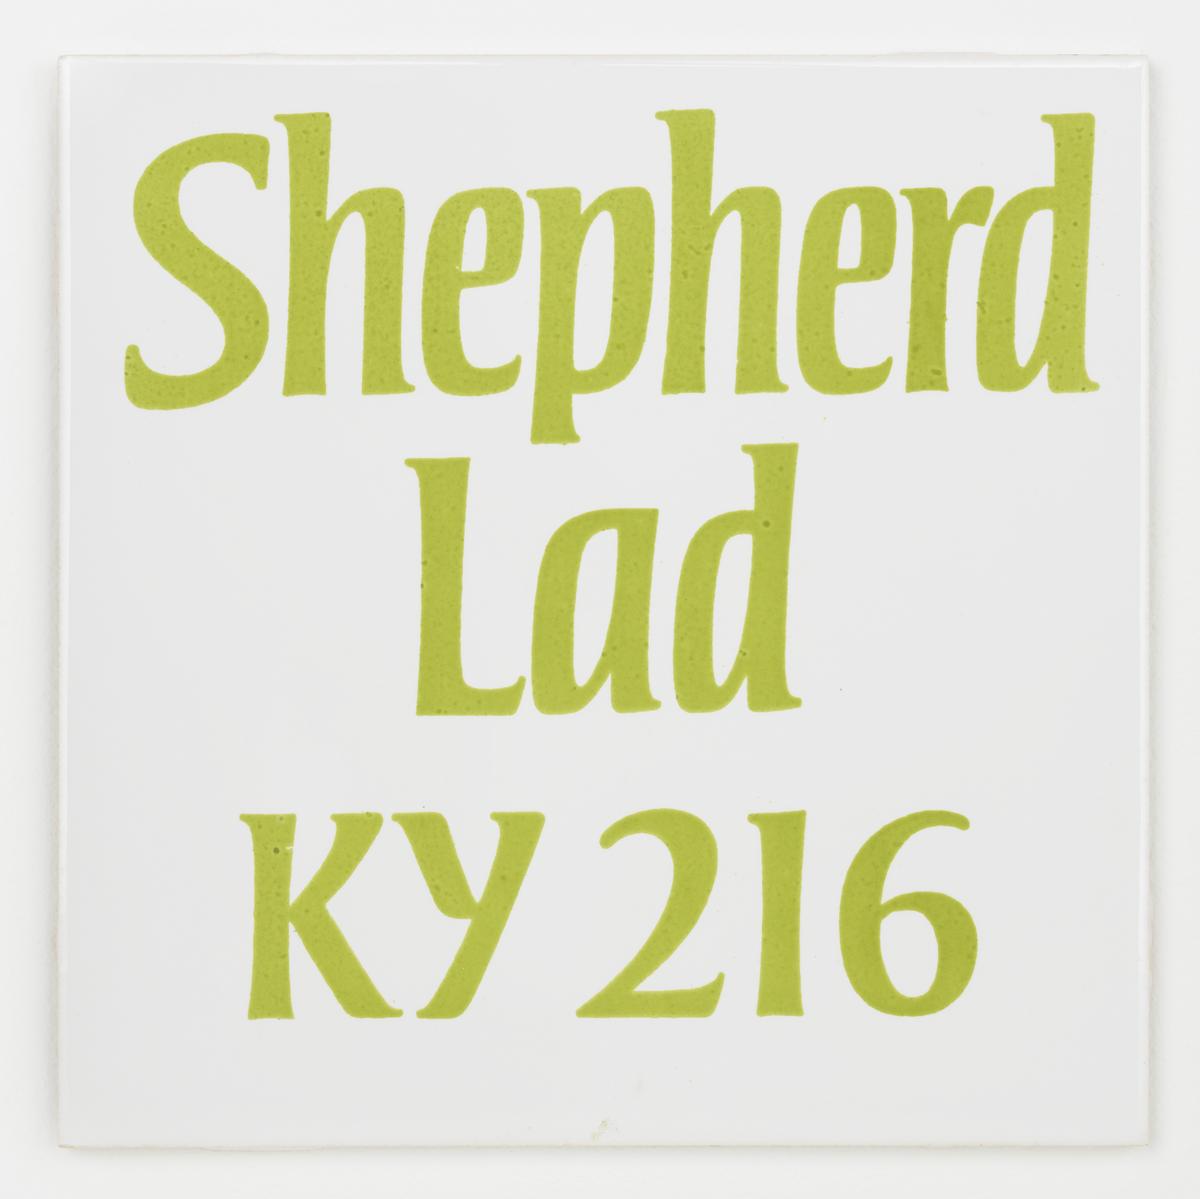 T11773: Shepherd Lad KY 216